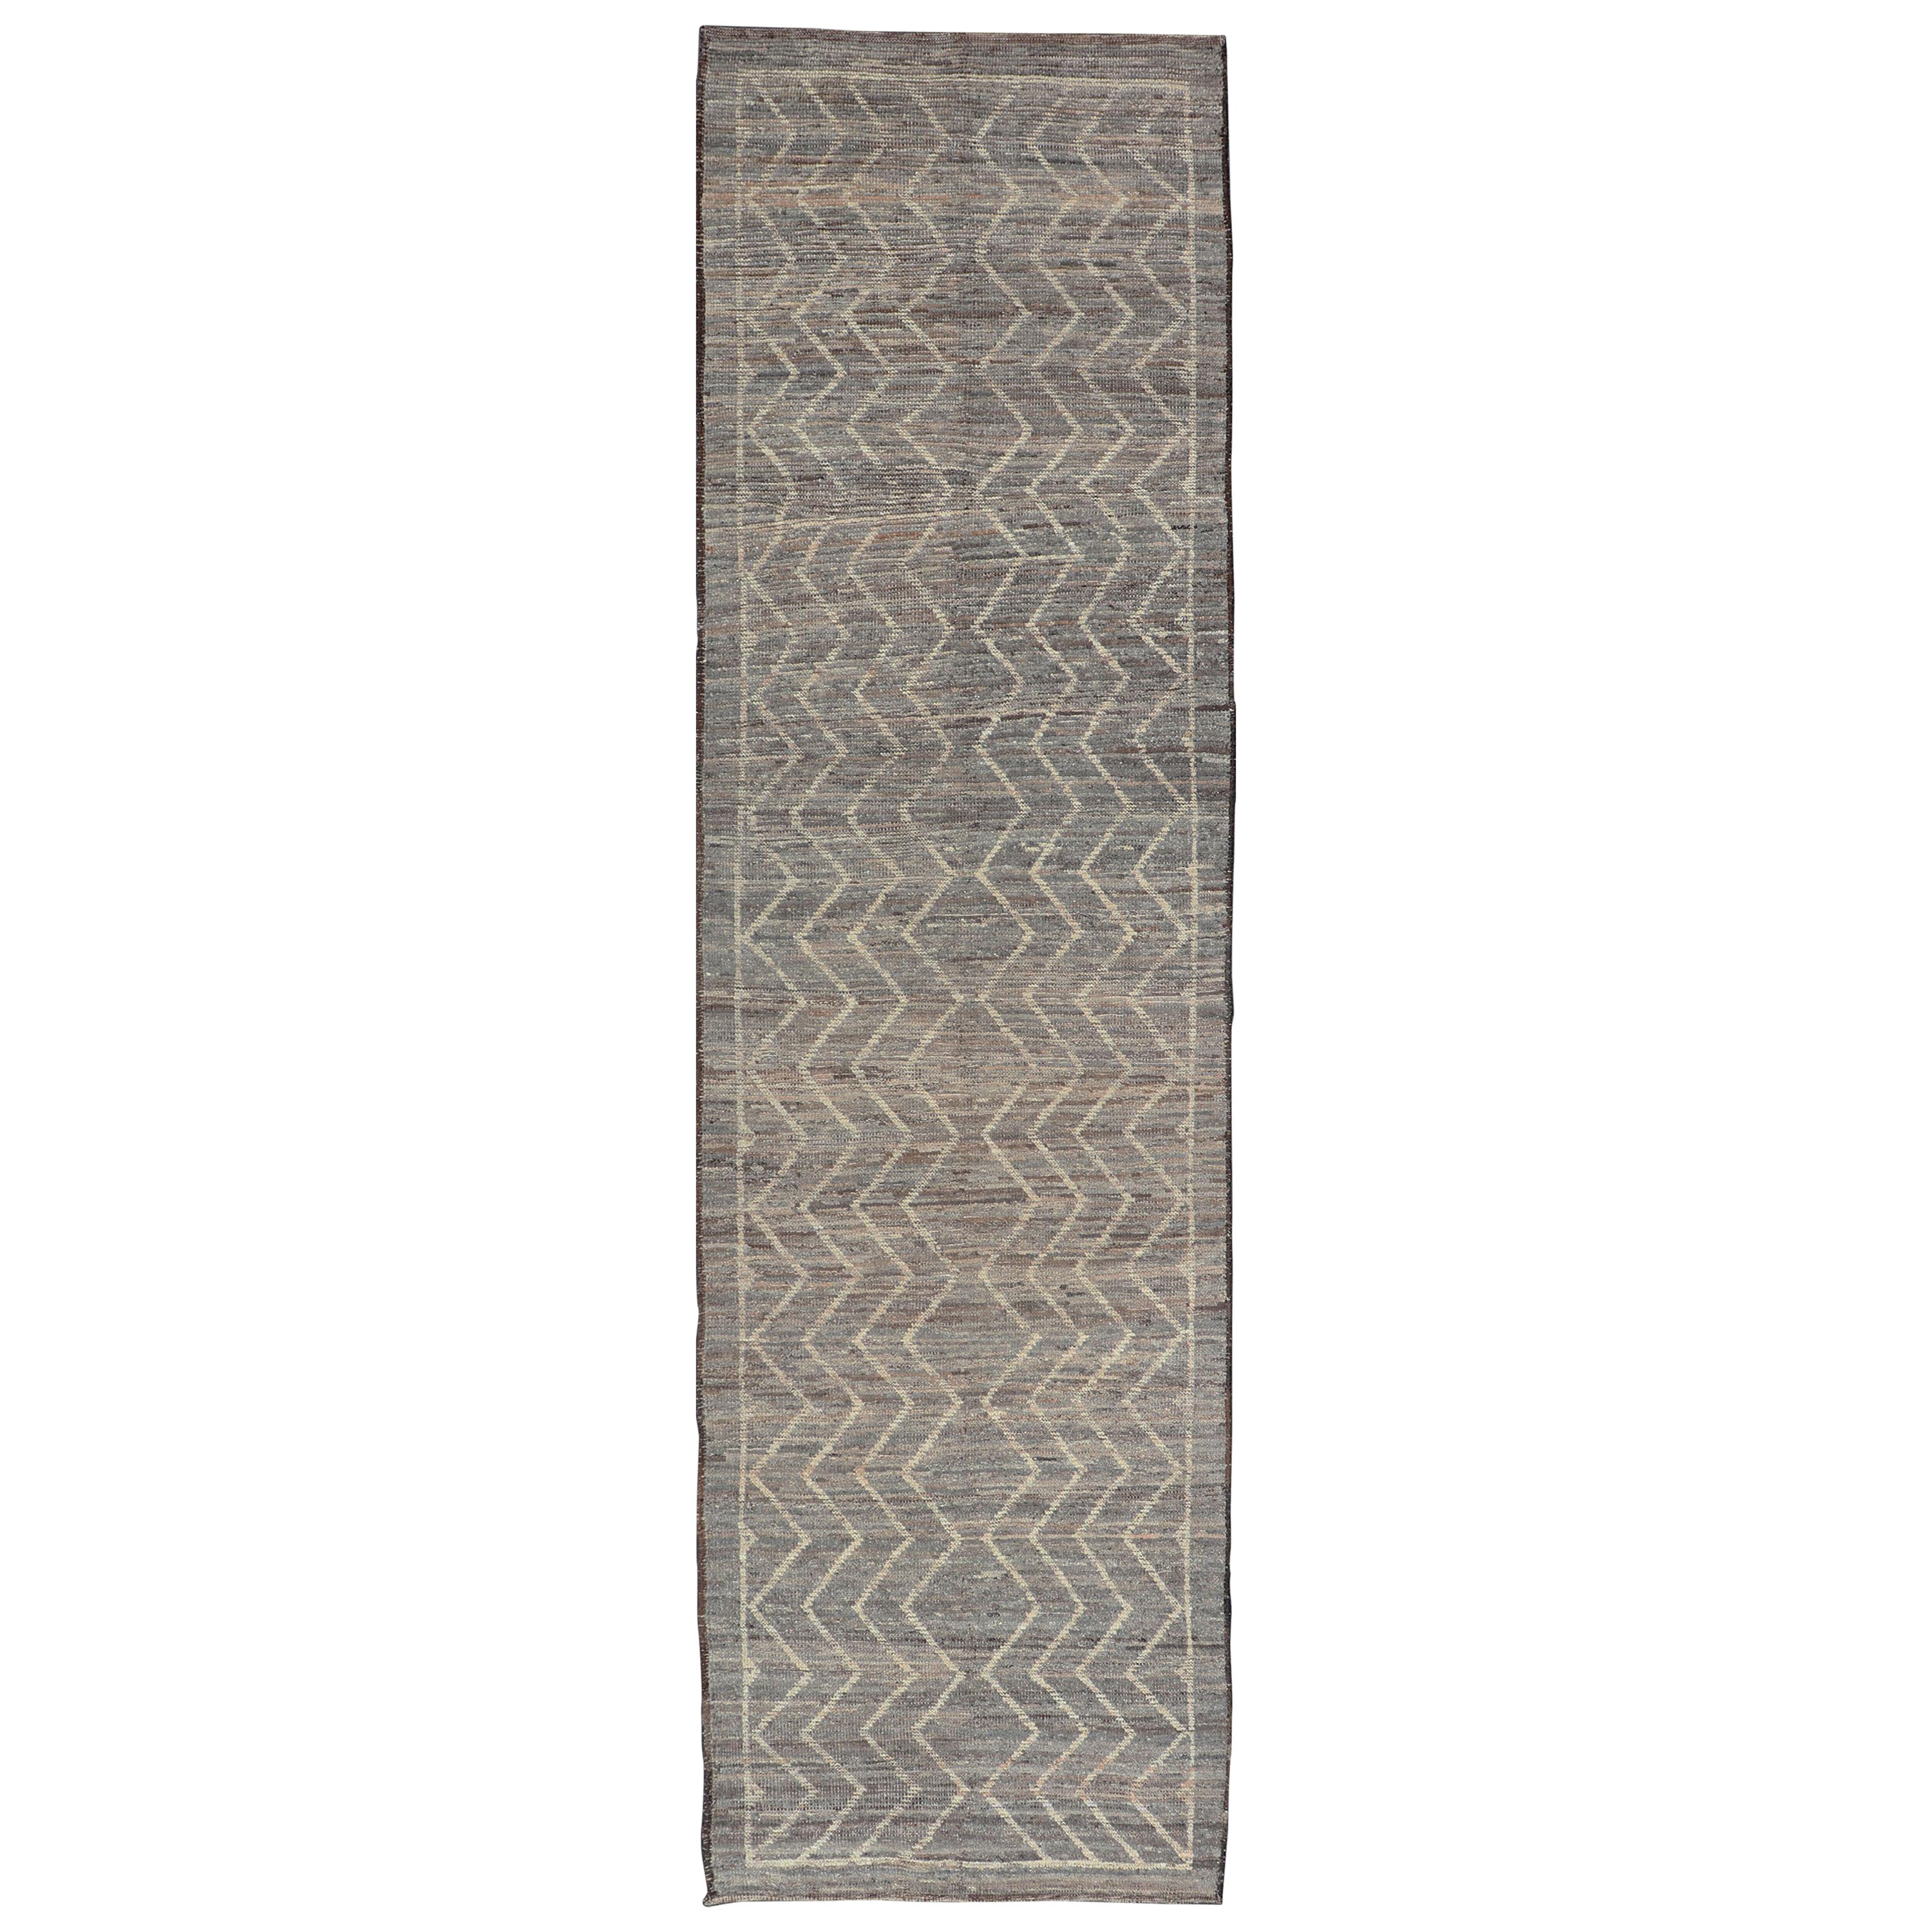 Tapis moderne à motif tribal en gris clair, taupe, crème et couleurs naturelles